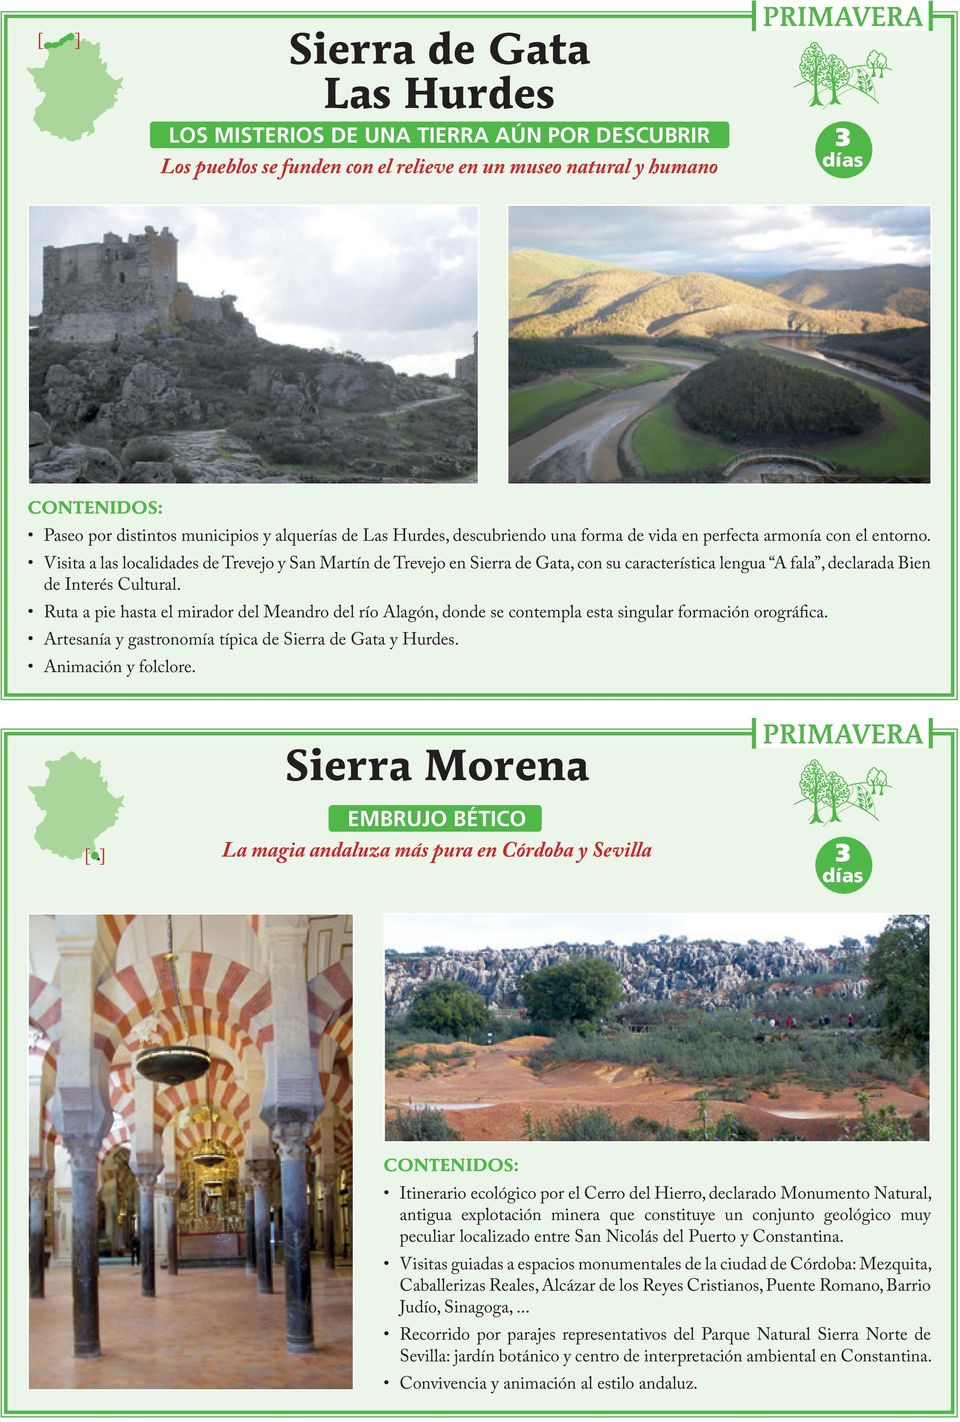 Visita a las localidades de Trevejo y San Martín de Trevejo en Sierra de Gata, con su característica lengua A fala, declarada Bien de Interés Cultural.